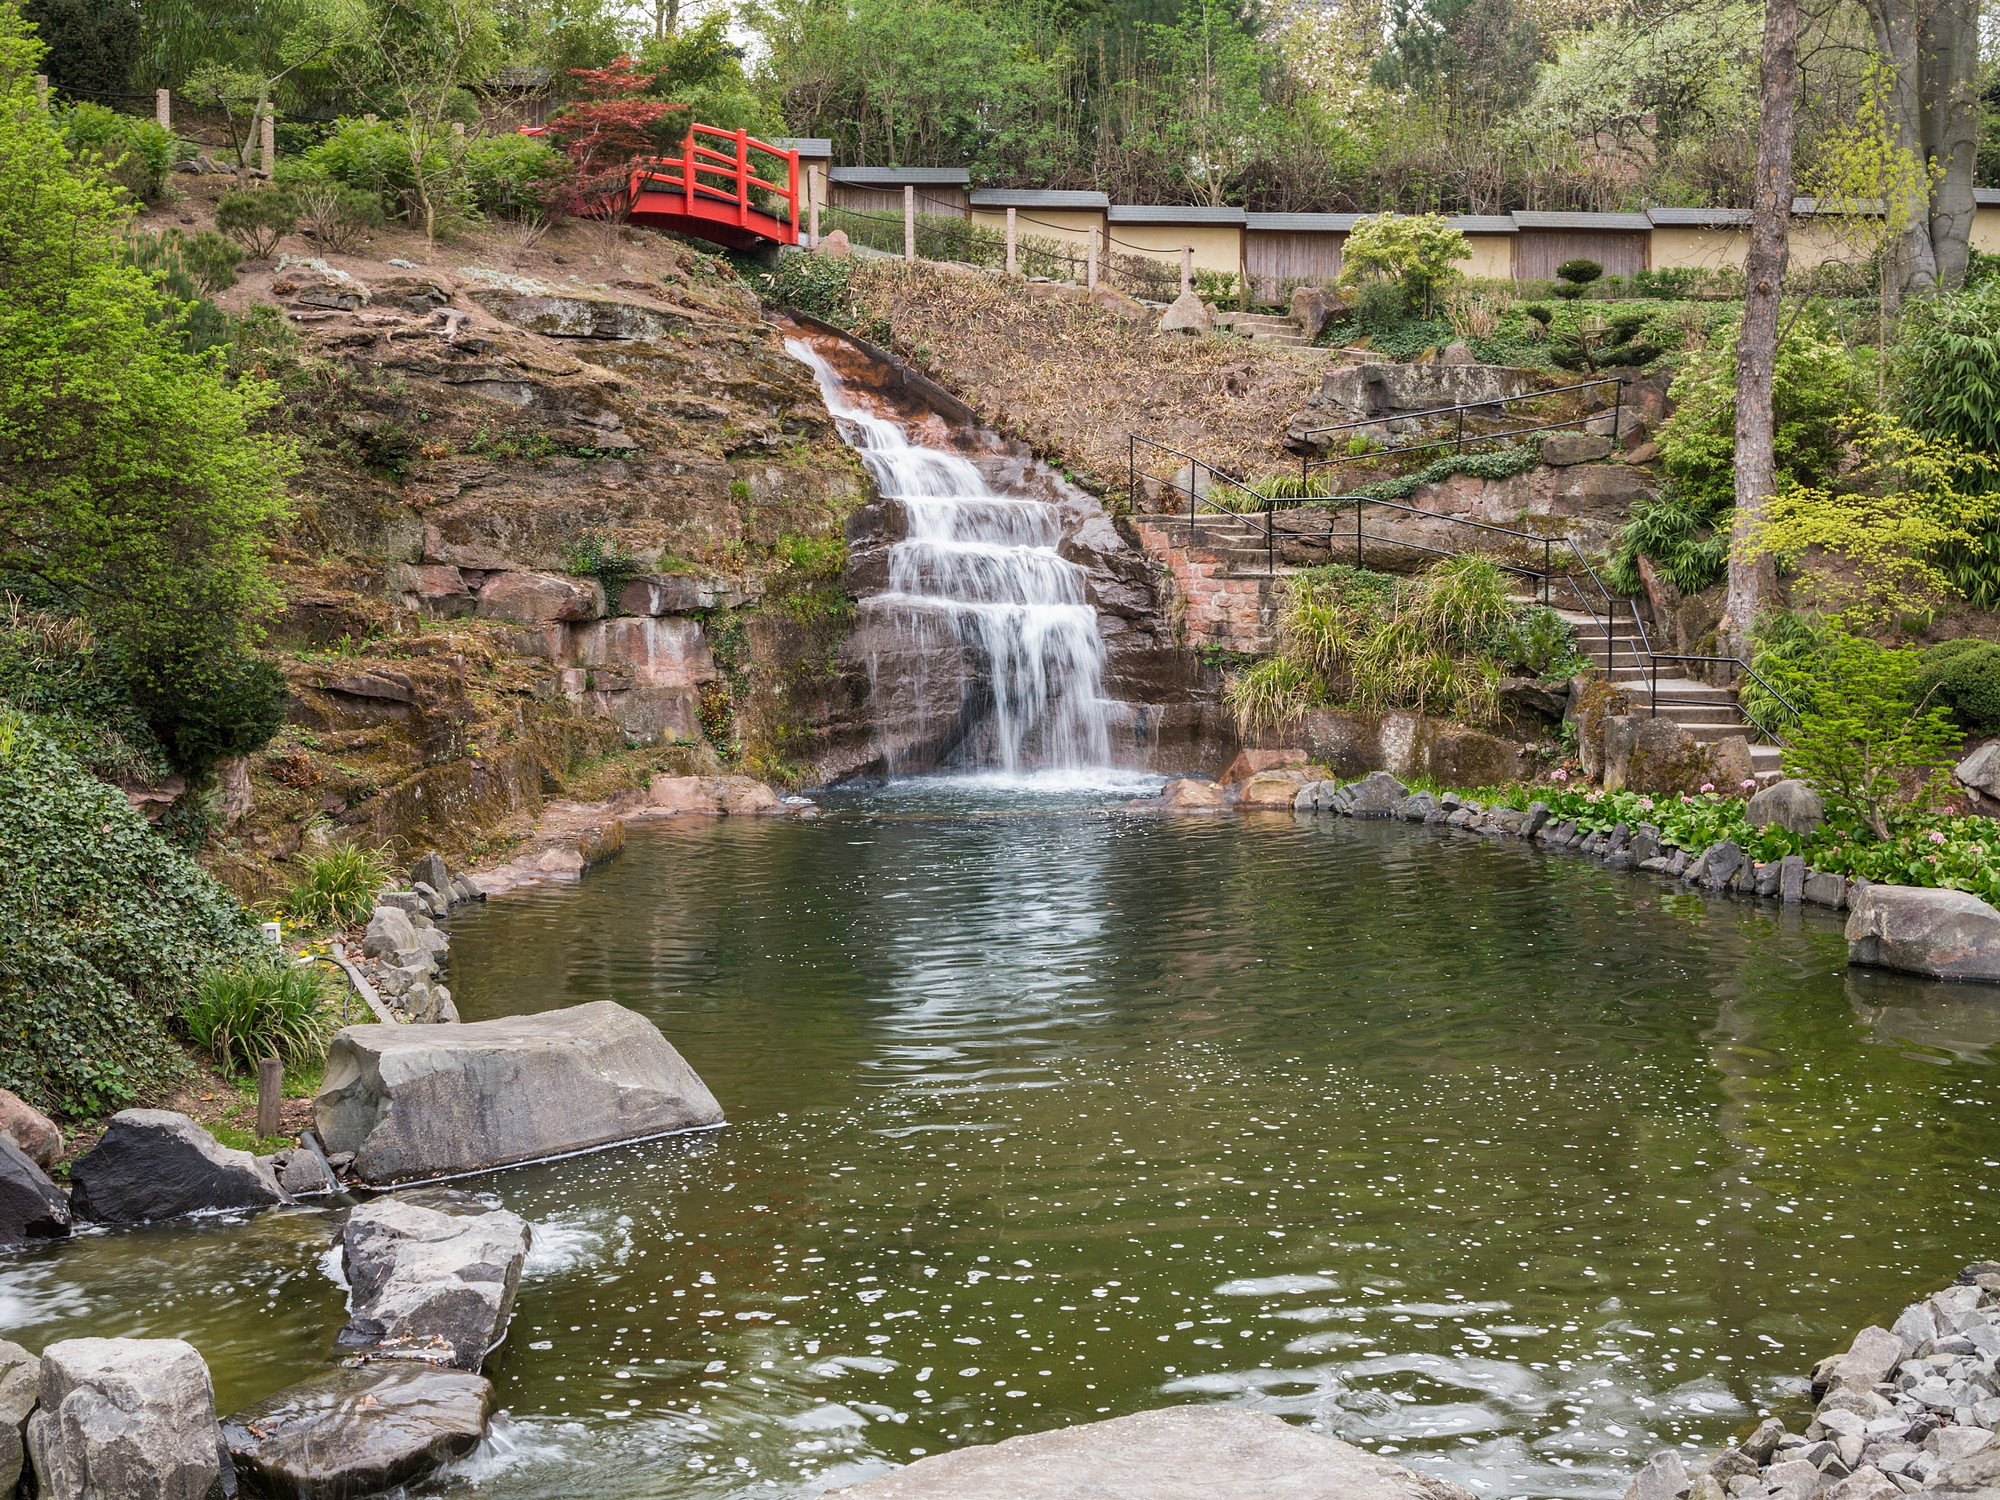 Japanischer Garten Kaiserslautern
 File Wasserfall am unteren Teich Japanischer Garten